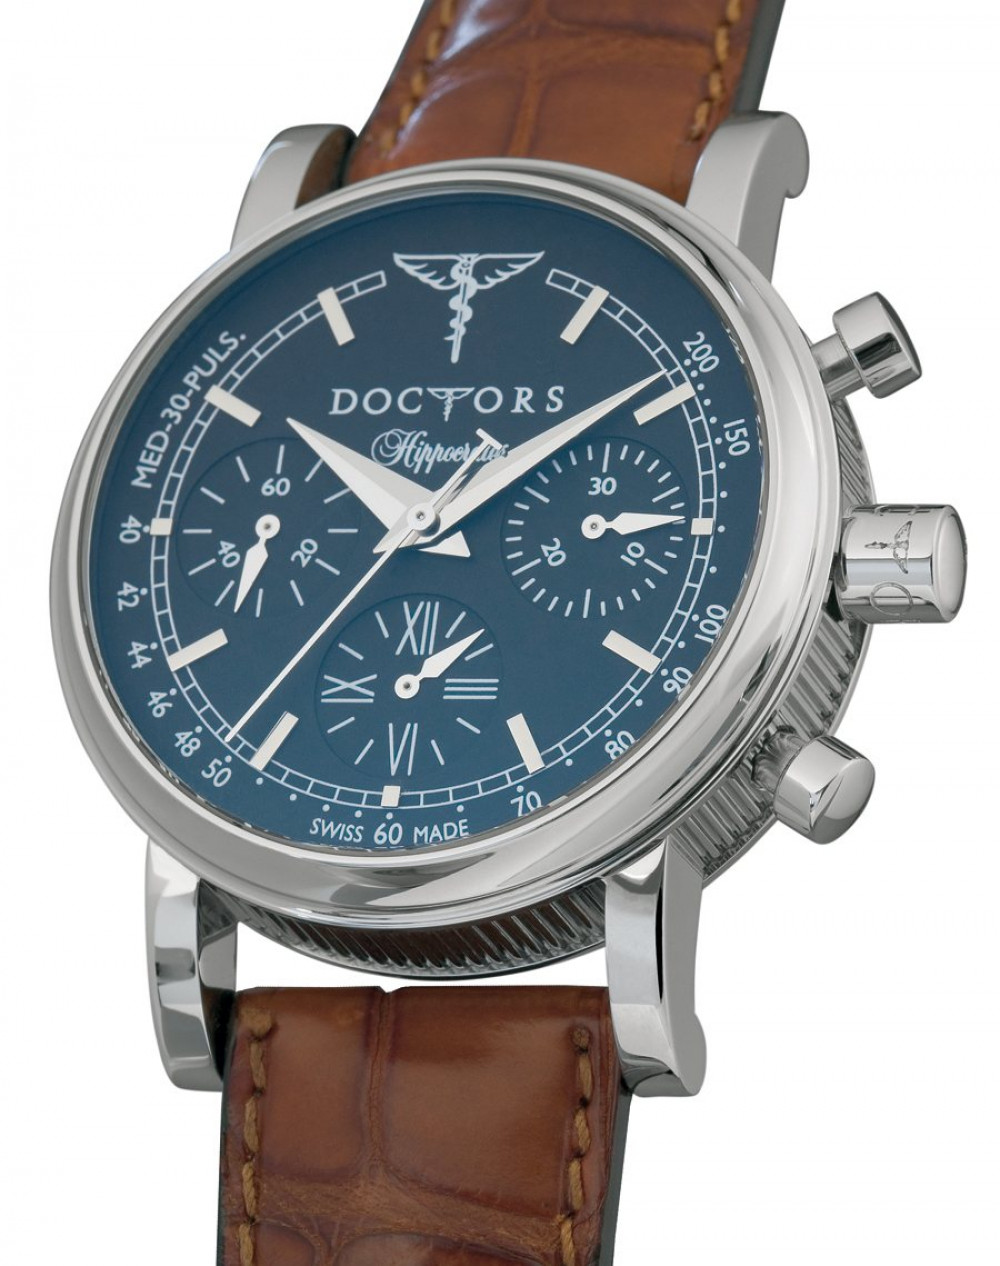 Zegarek firmy Doctors, model Hippocrates